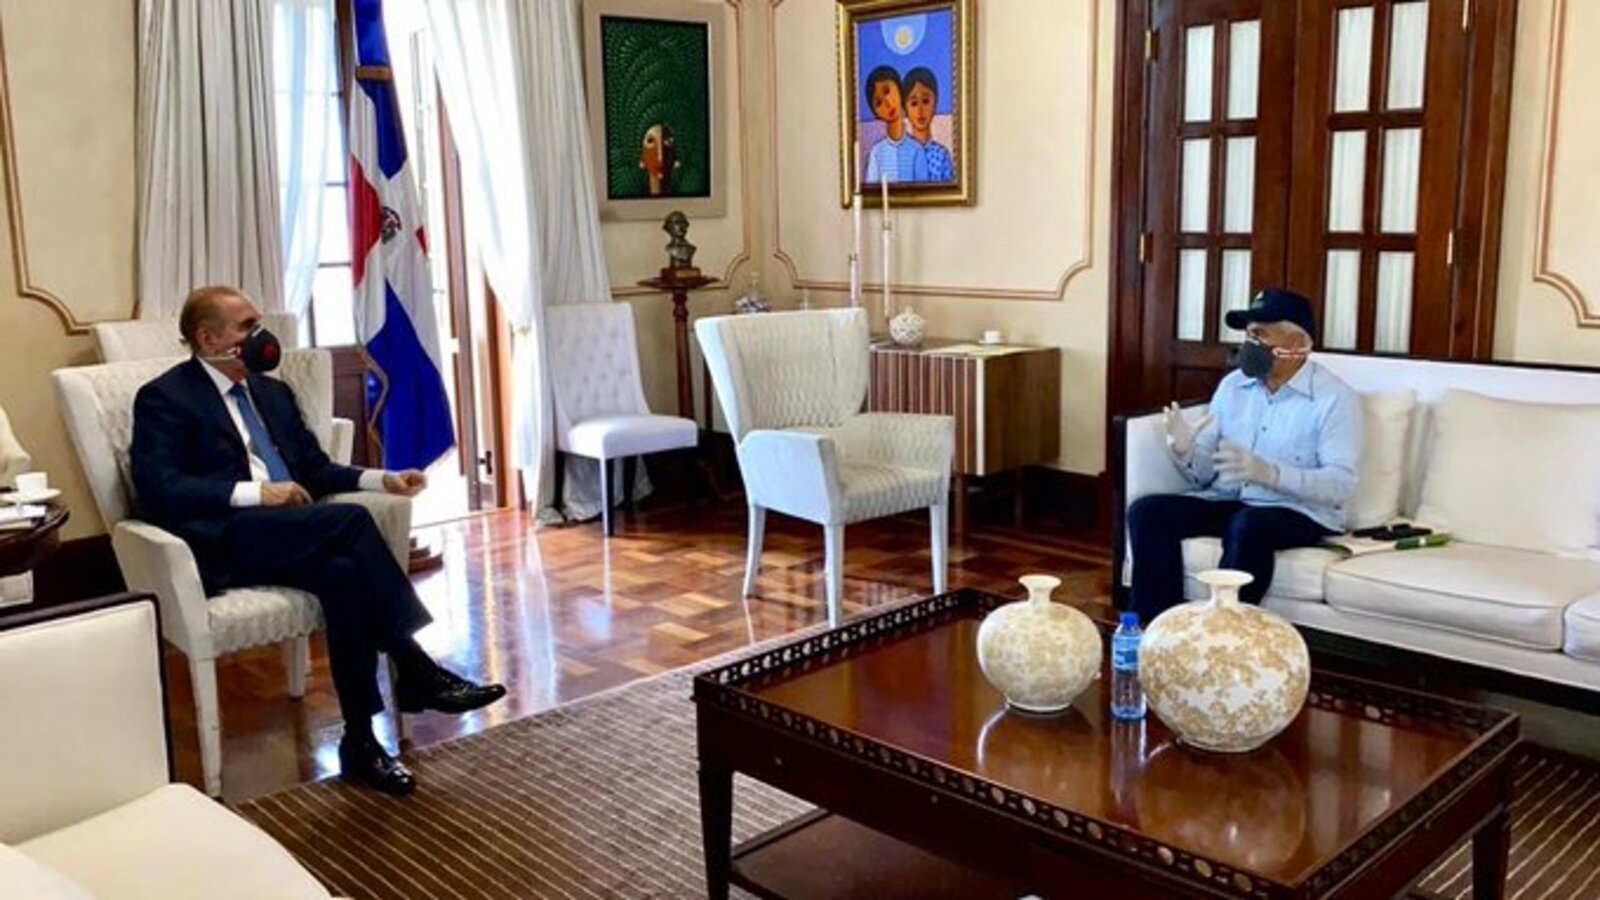 REPÚBLICA DOMINICANA: Presidente Danilo Medina recibe informe sobre sector agropecuario y producción de alimentos en RD ante coronavirus